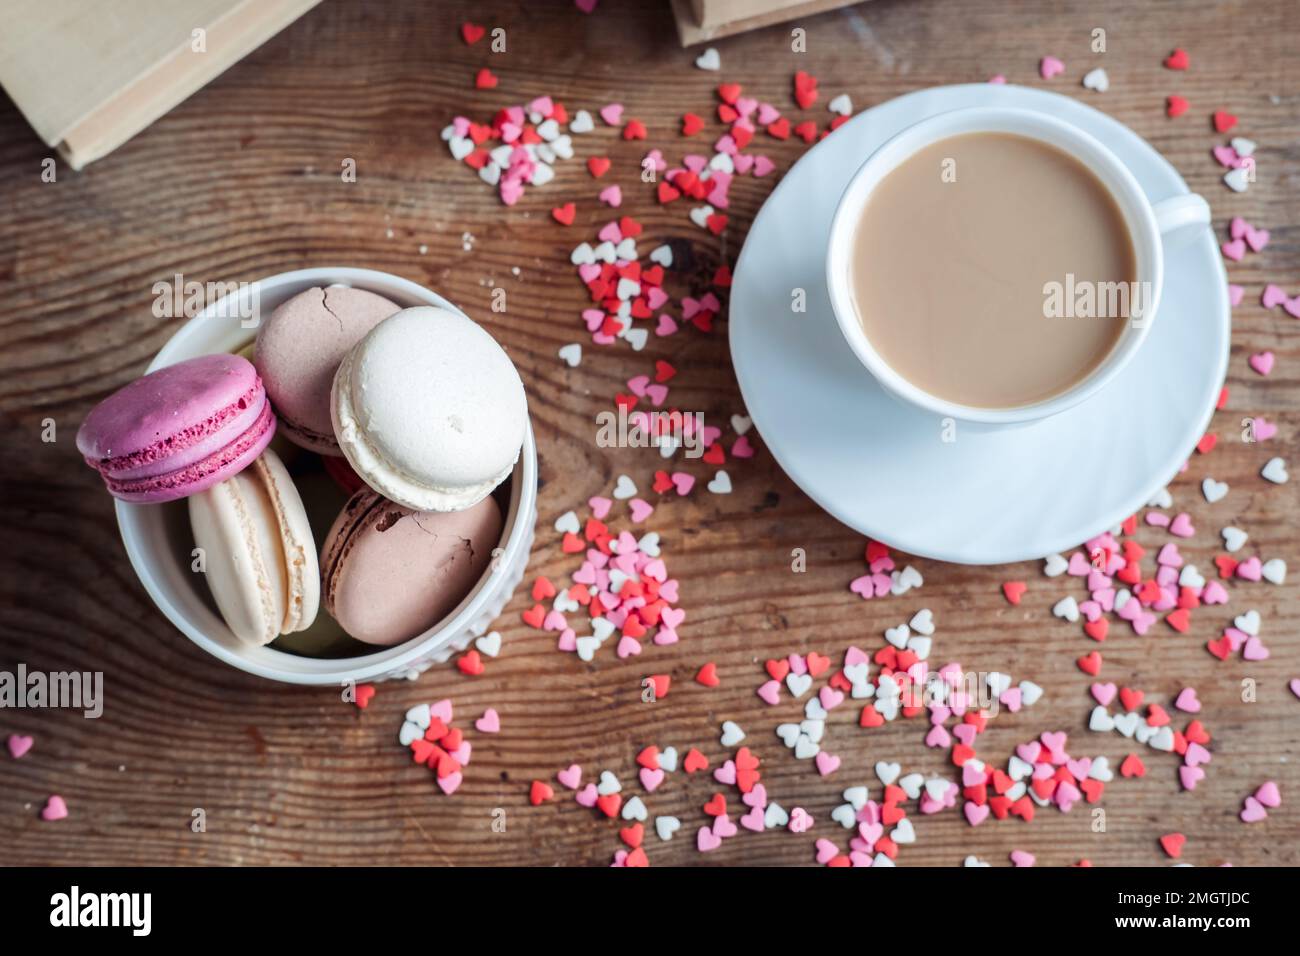 Makronen in einer Schüssel und eine Tasse Kaffee, vor dem Hintergrund kleiner Herzen auf einem hölzernen Hintergrund, Draufsicht Stockfoto